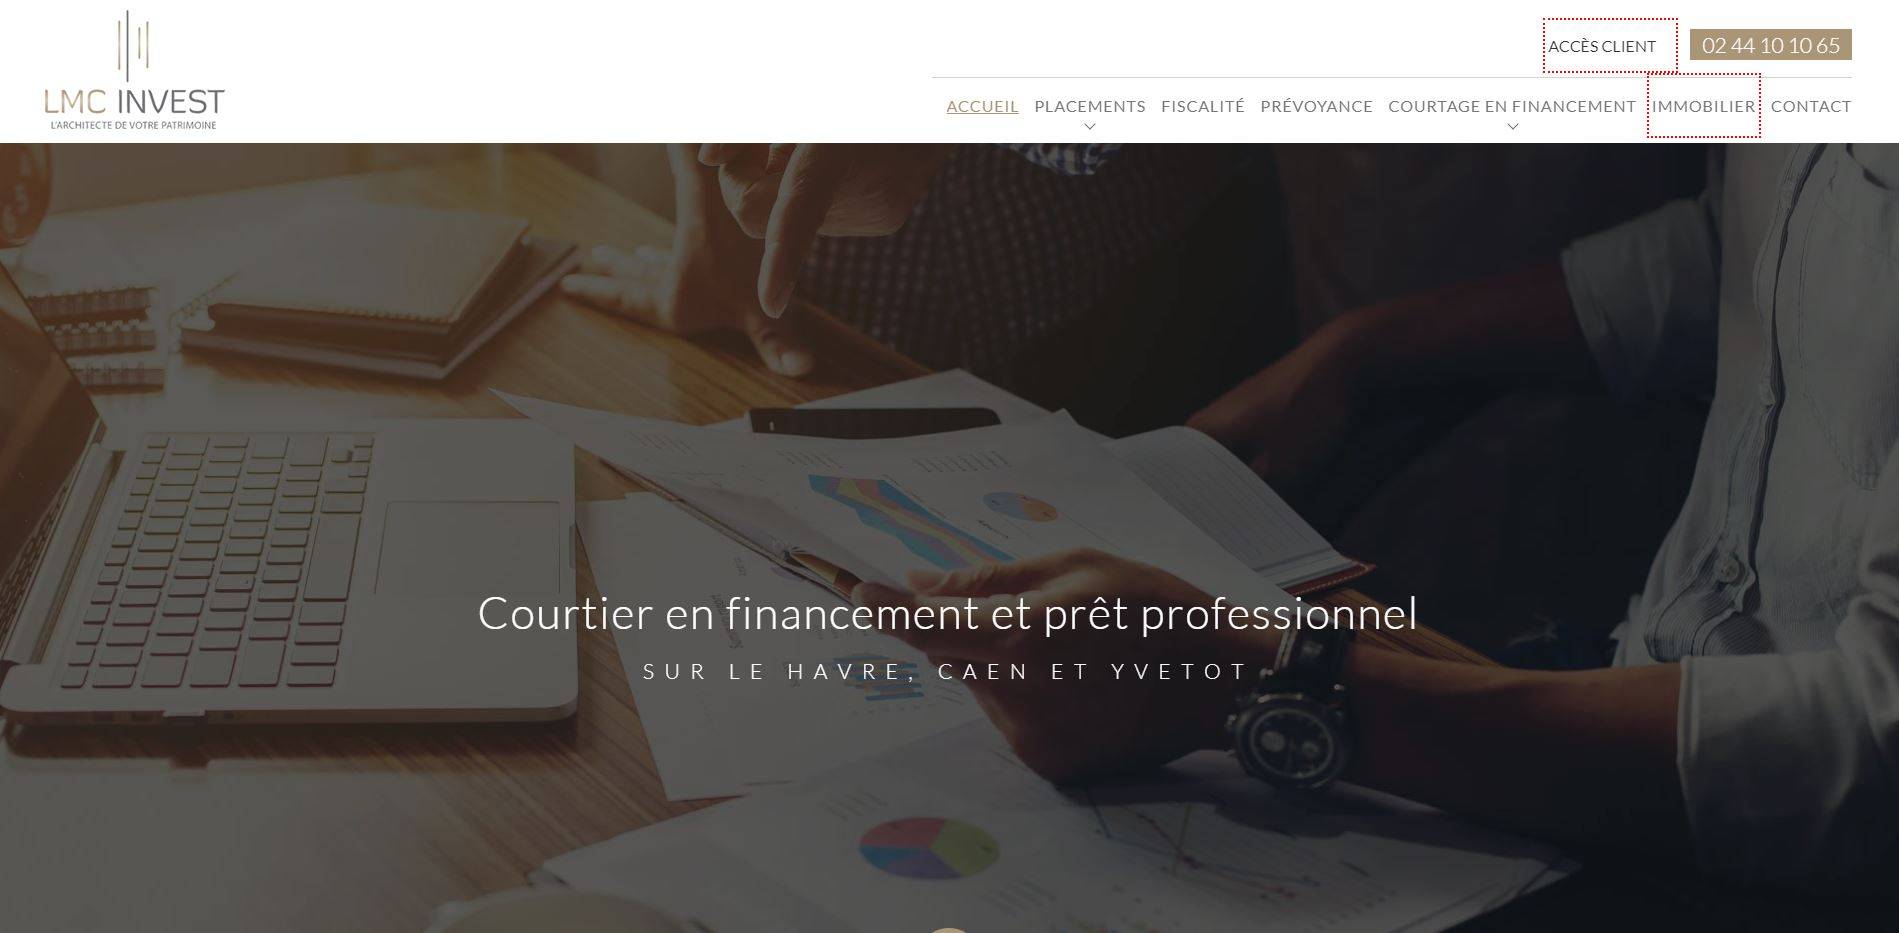 Comment faire un bon placement financier au Havre ? - LMC Invest